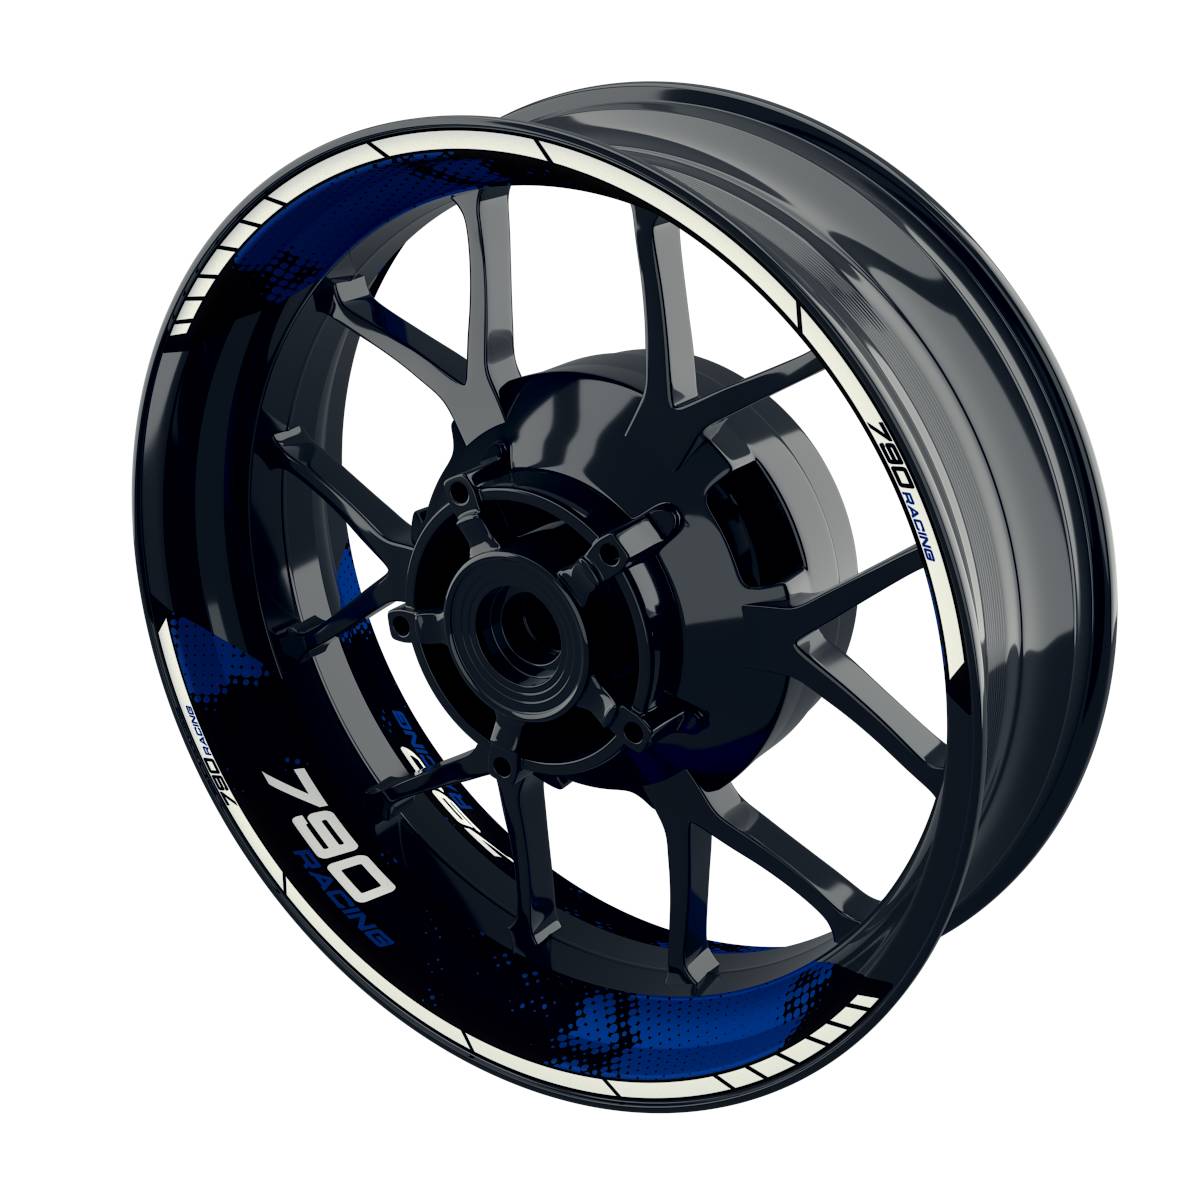 Racing 790 Dots Rim Decals Wheelsticker Premium splitted